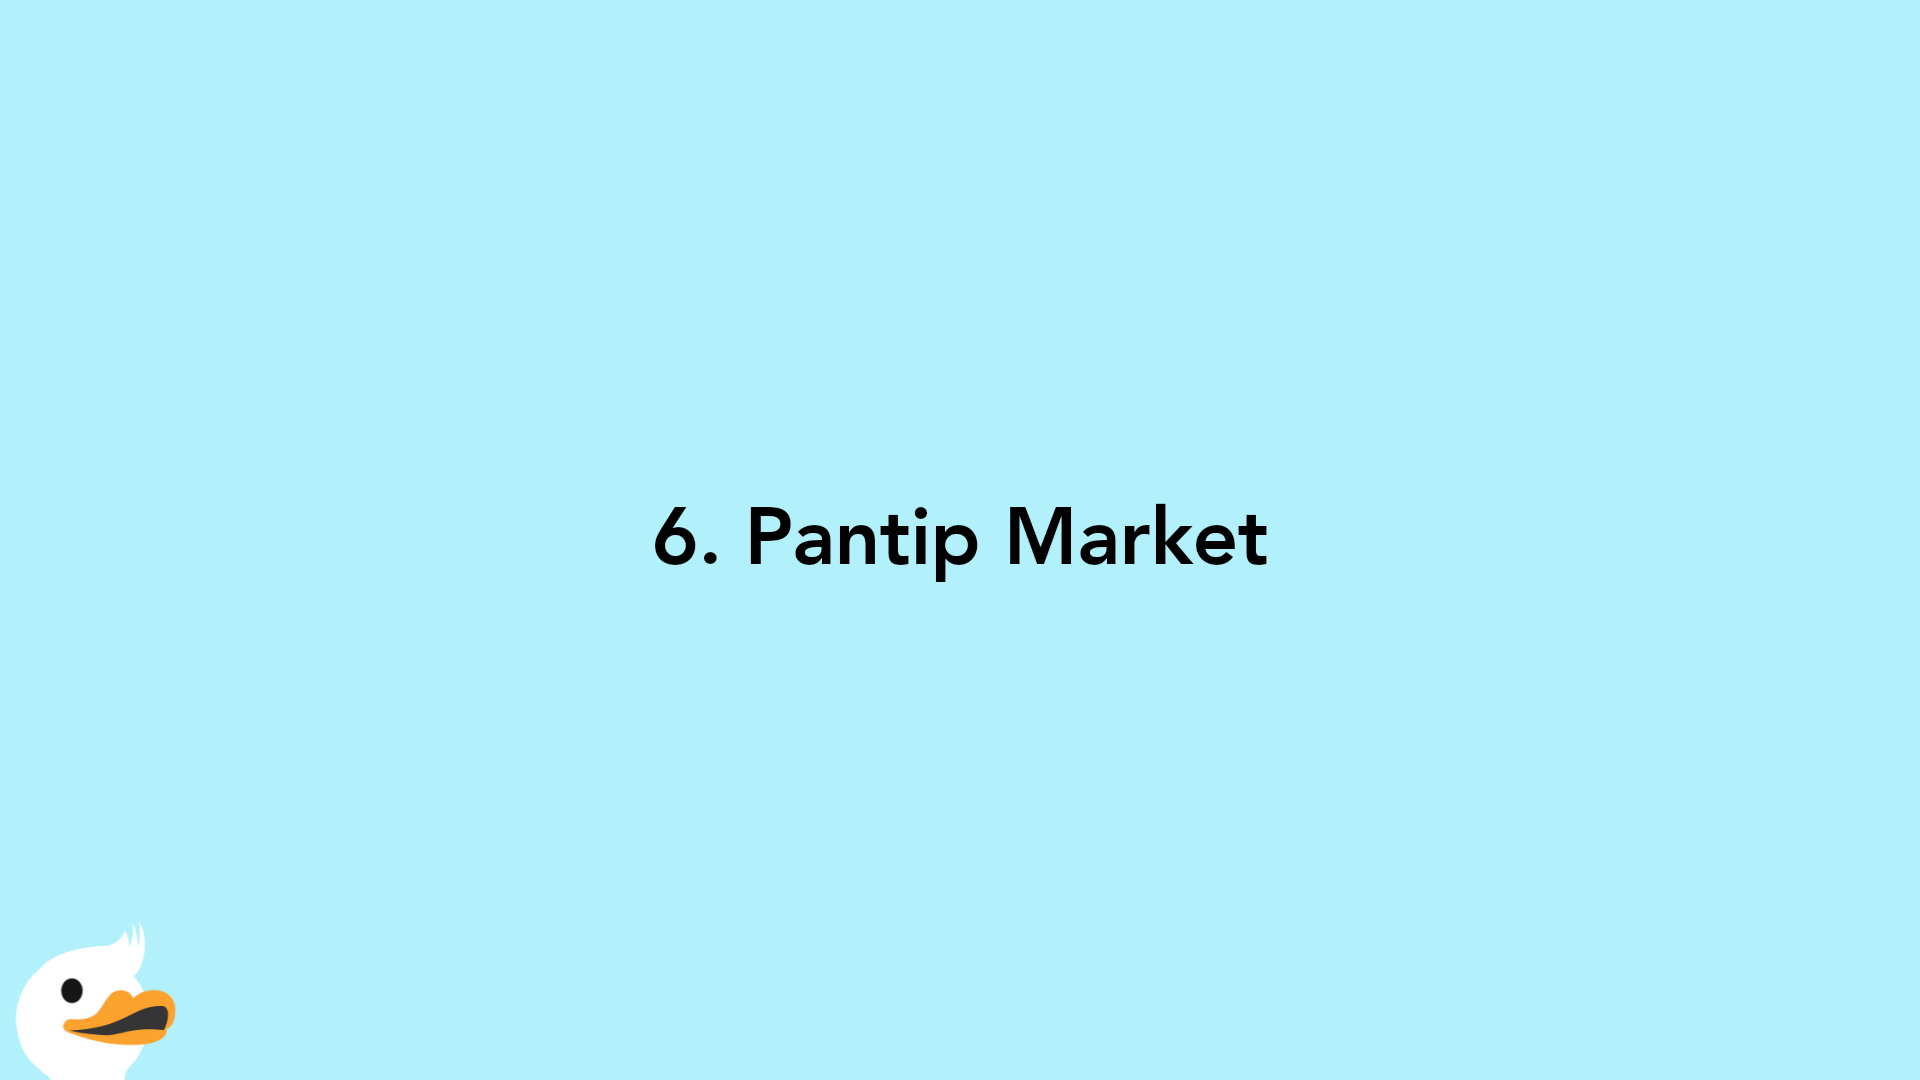 6. Pantip Market